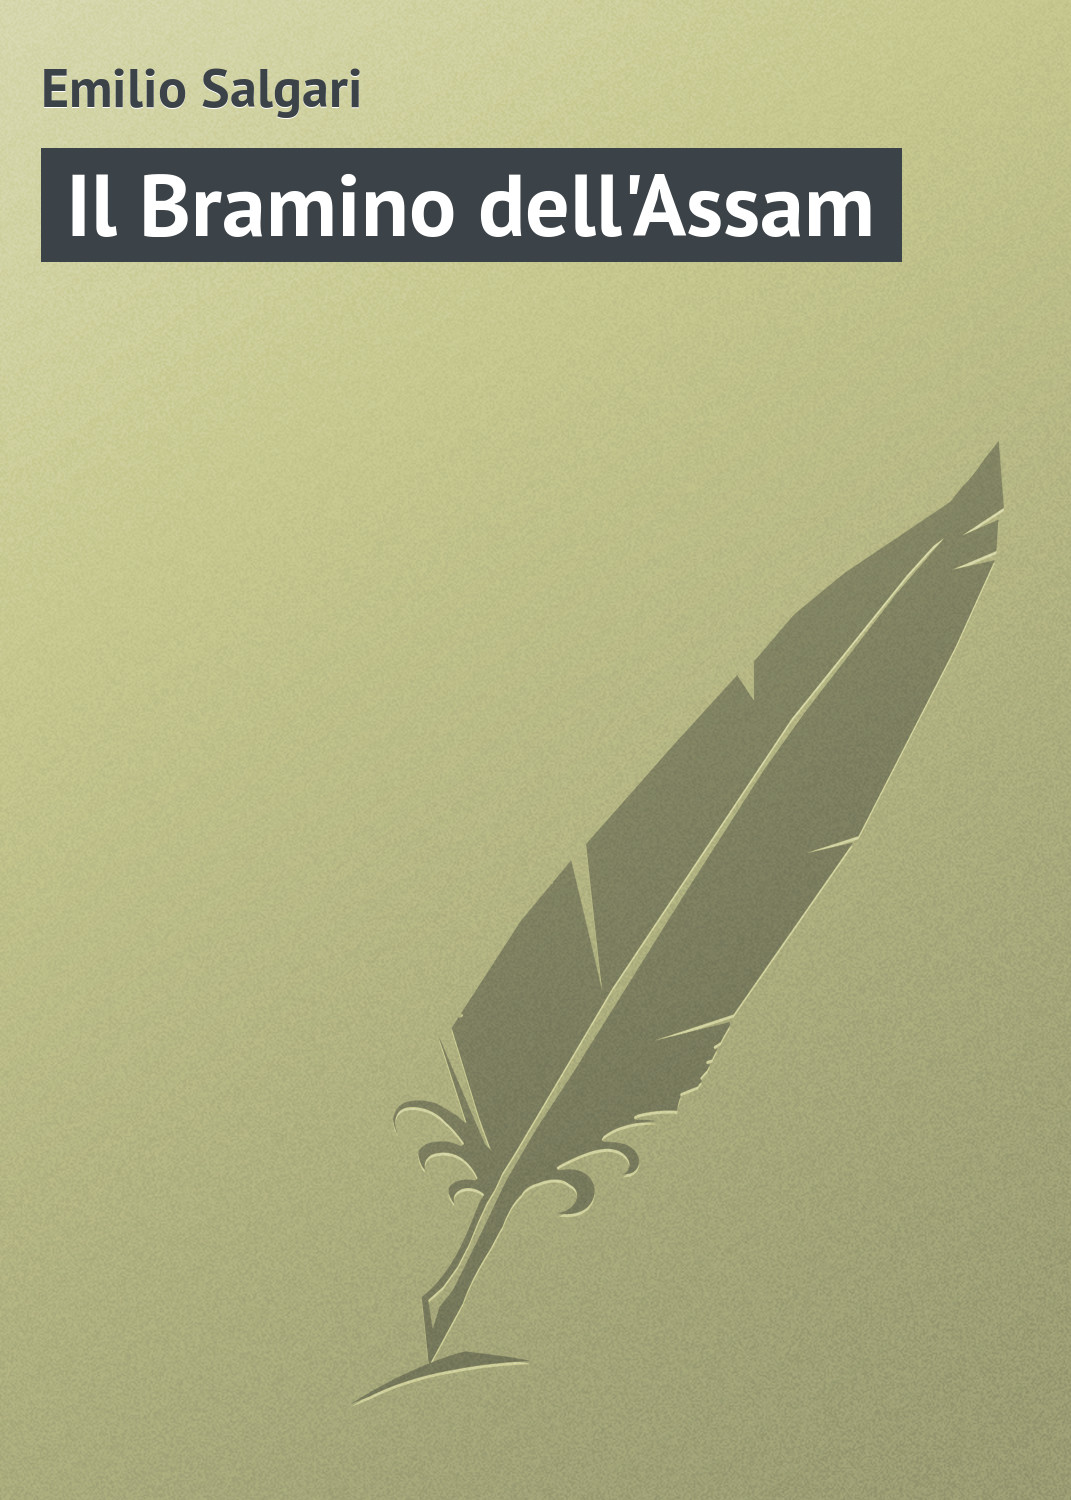 Книга Il Bramino dell'Assam из серии , созданная Emilio Salgari, может относится к жанру Зарубежная старинная литература, Зарубежная классика. Стоимость электронной книги Il Bramino dell'Assam с идентификатором 21104046 составляет 5.99 руб.